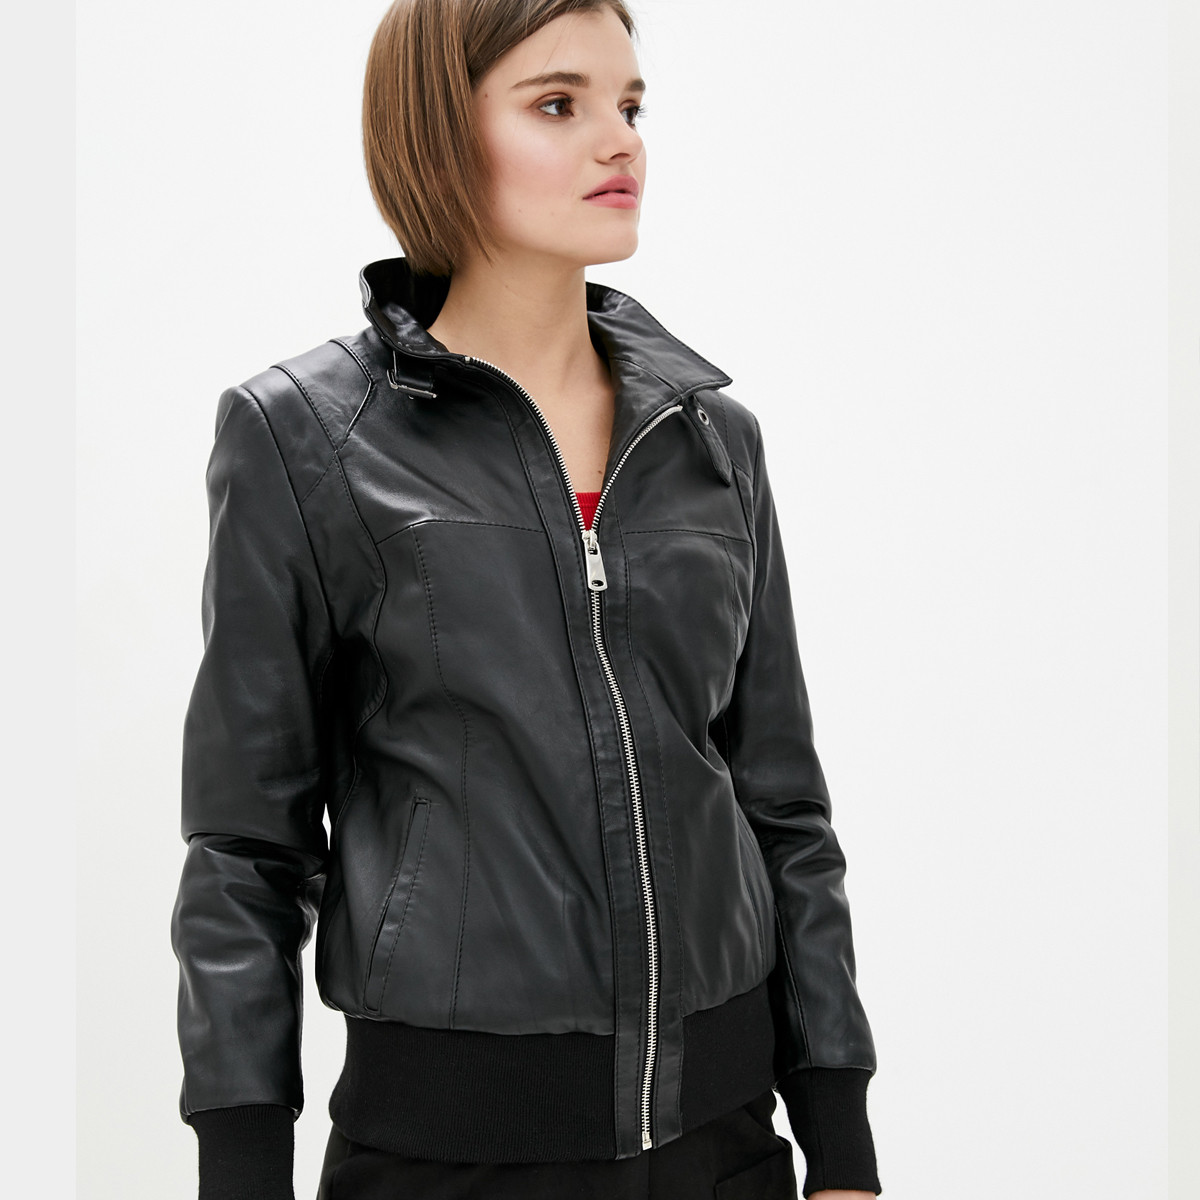 Шкіряна куртка-бомбер жіноча коротка (Арт. TRE2-201)